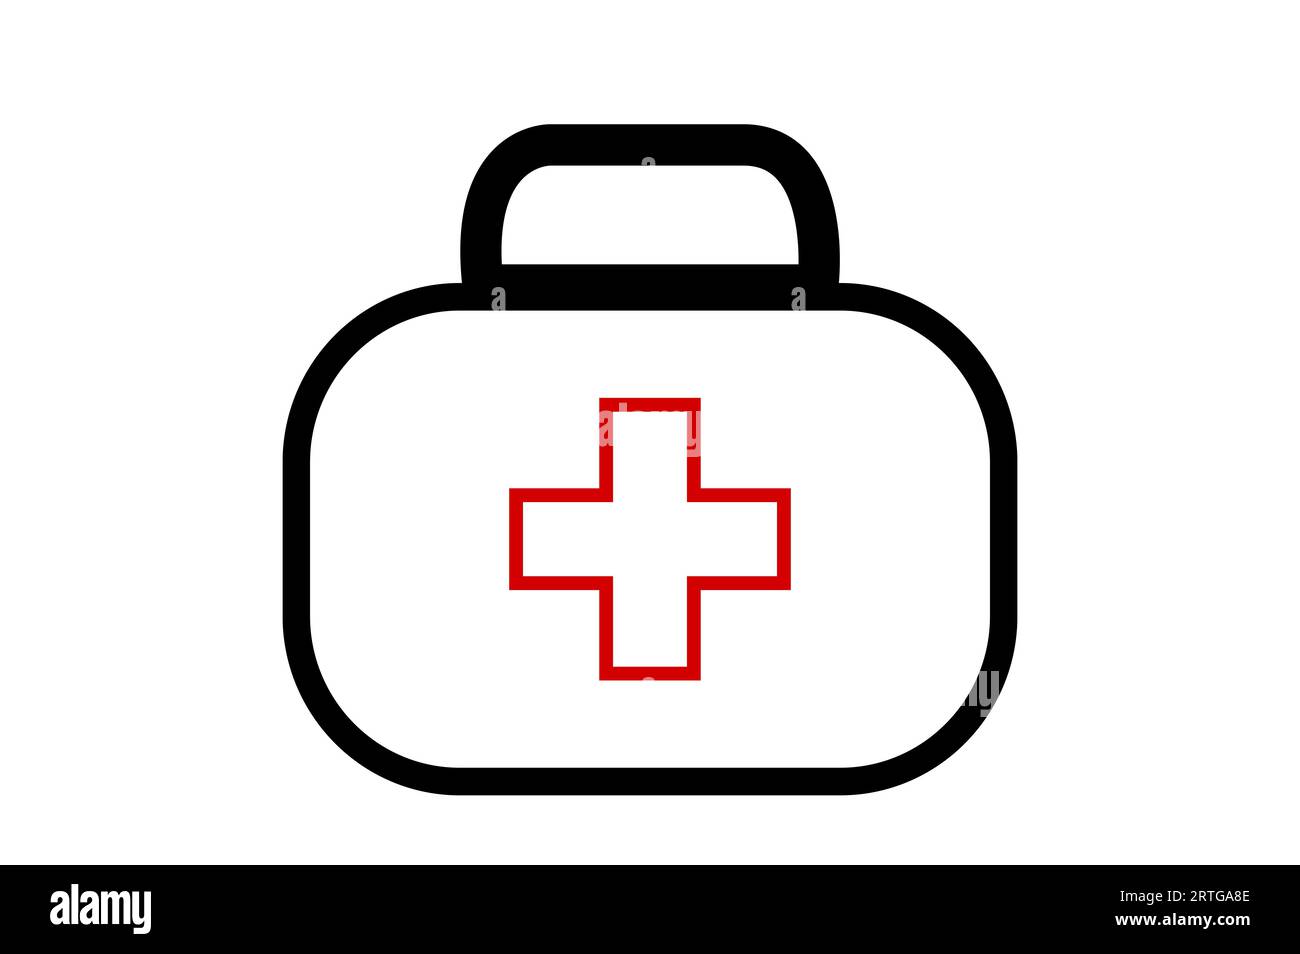 Nurse bag icon on white background, isolated. Stock Photo